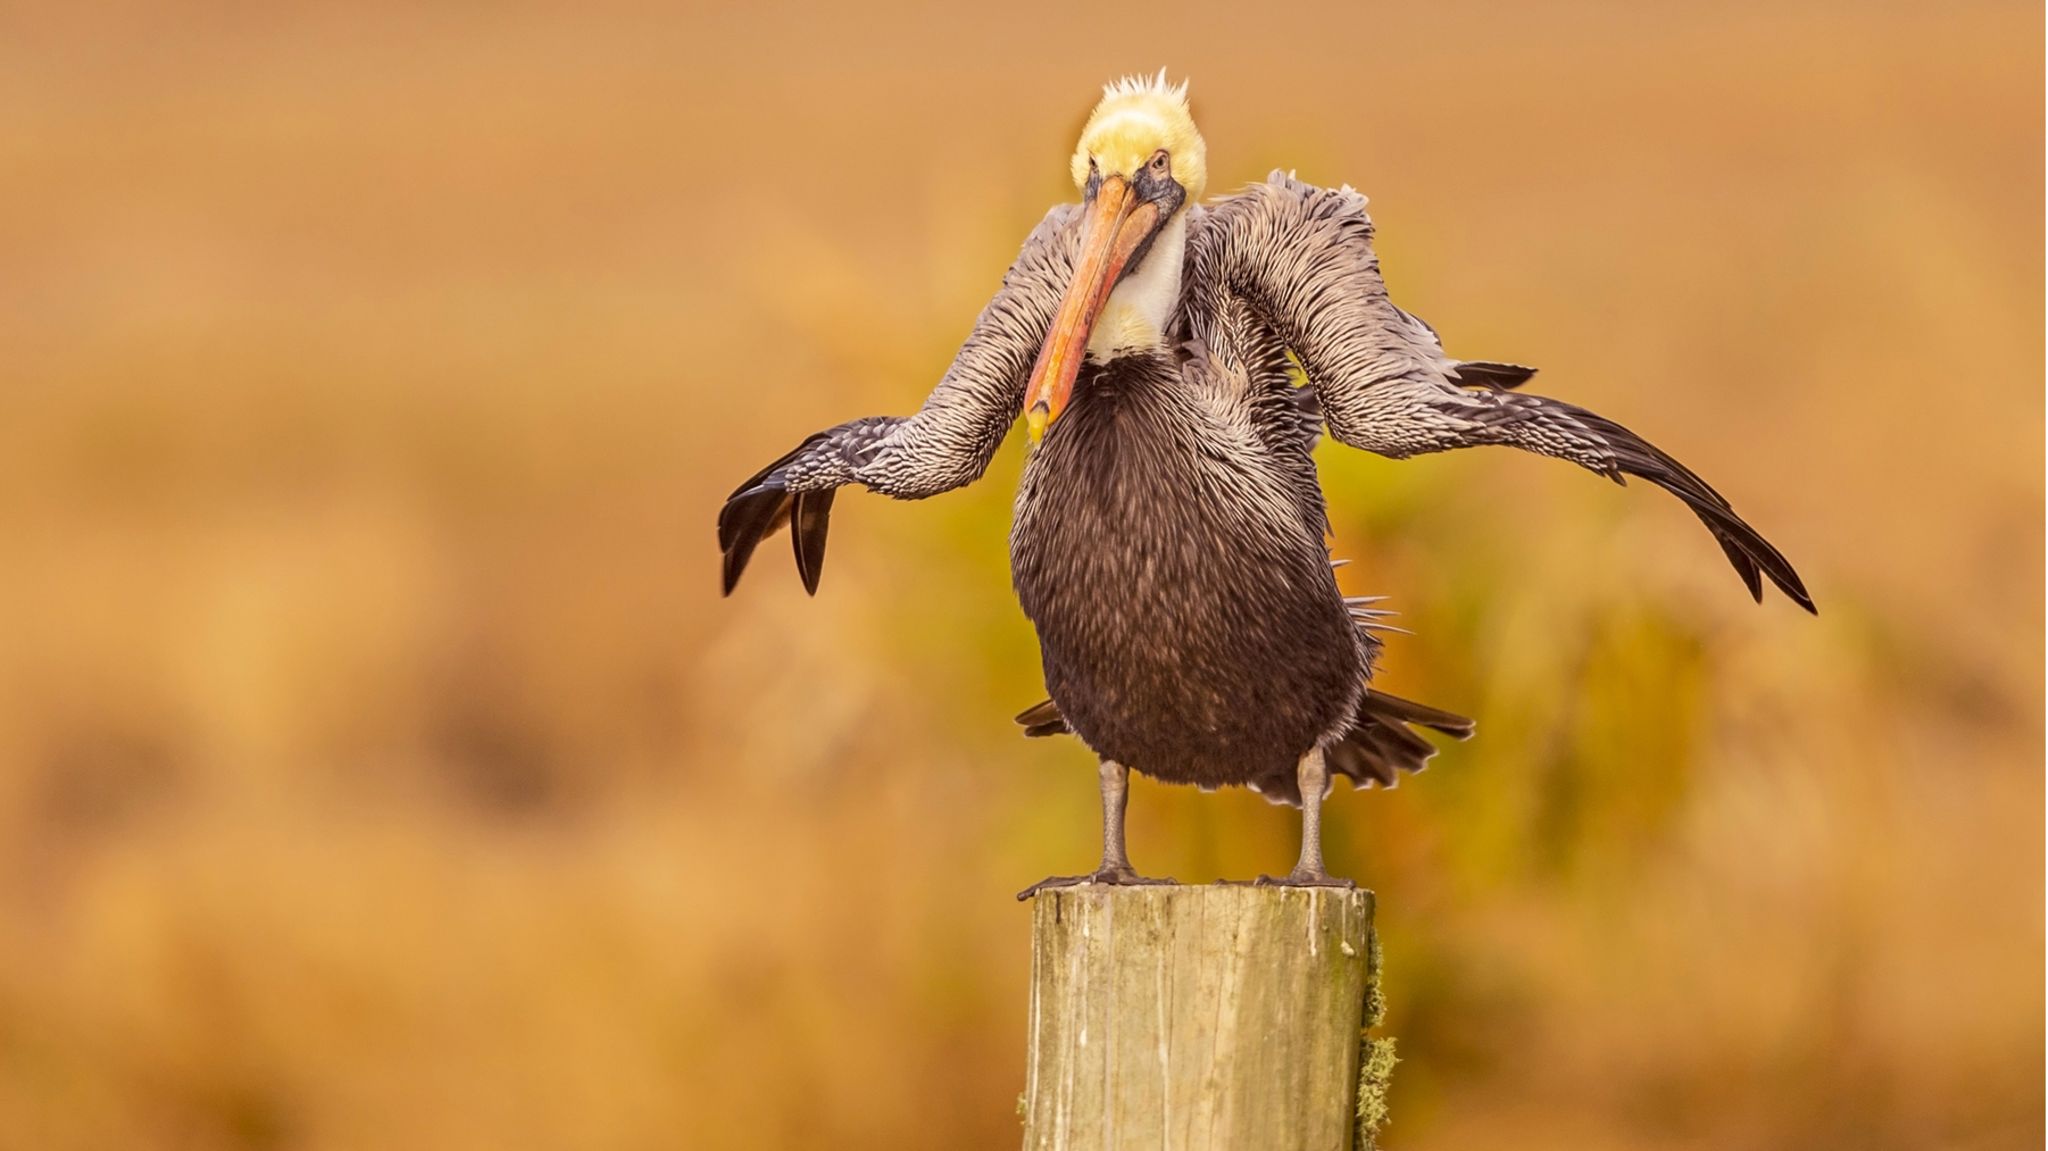 Unfreiwillig komisch: Fotowettbewerb zeigt die lustigsten Tierfotos des  Jahres